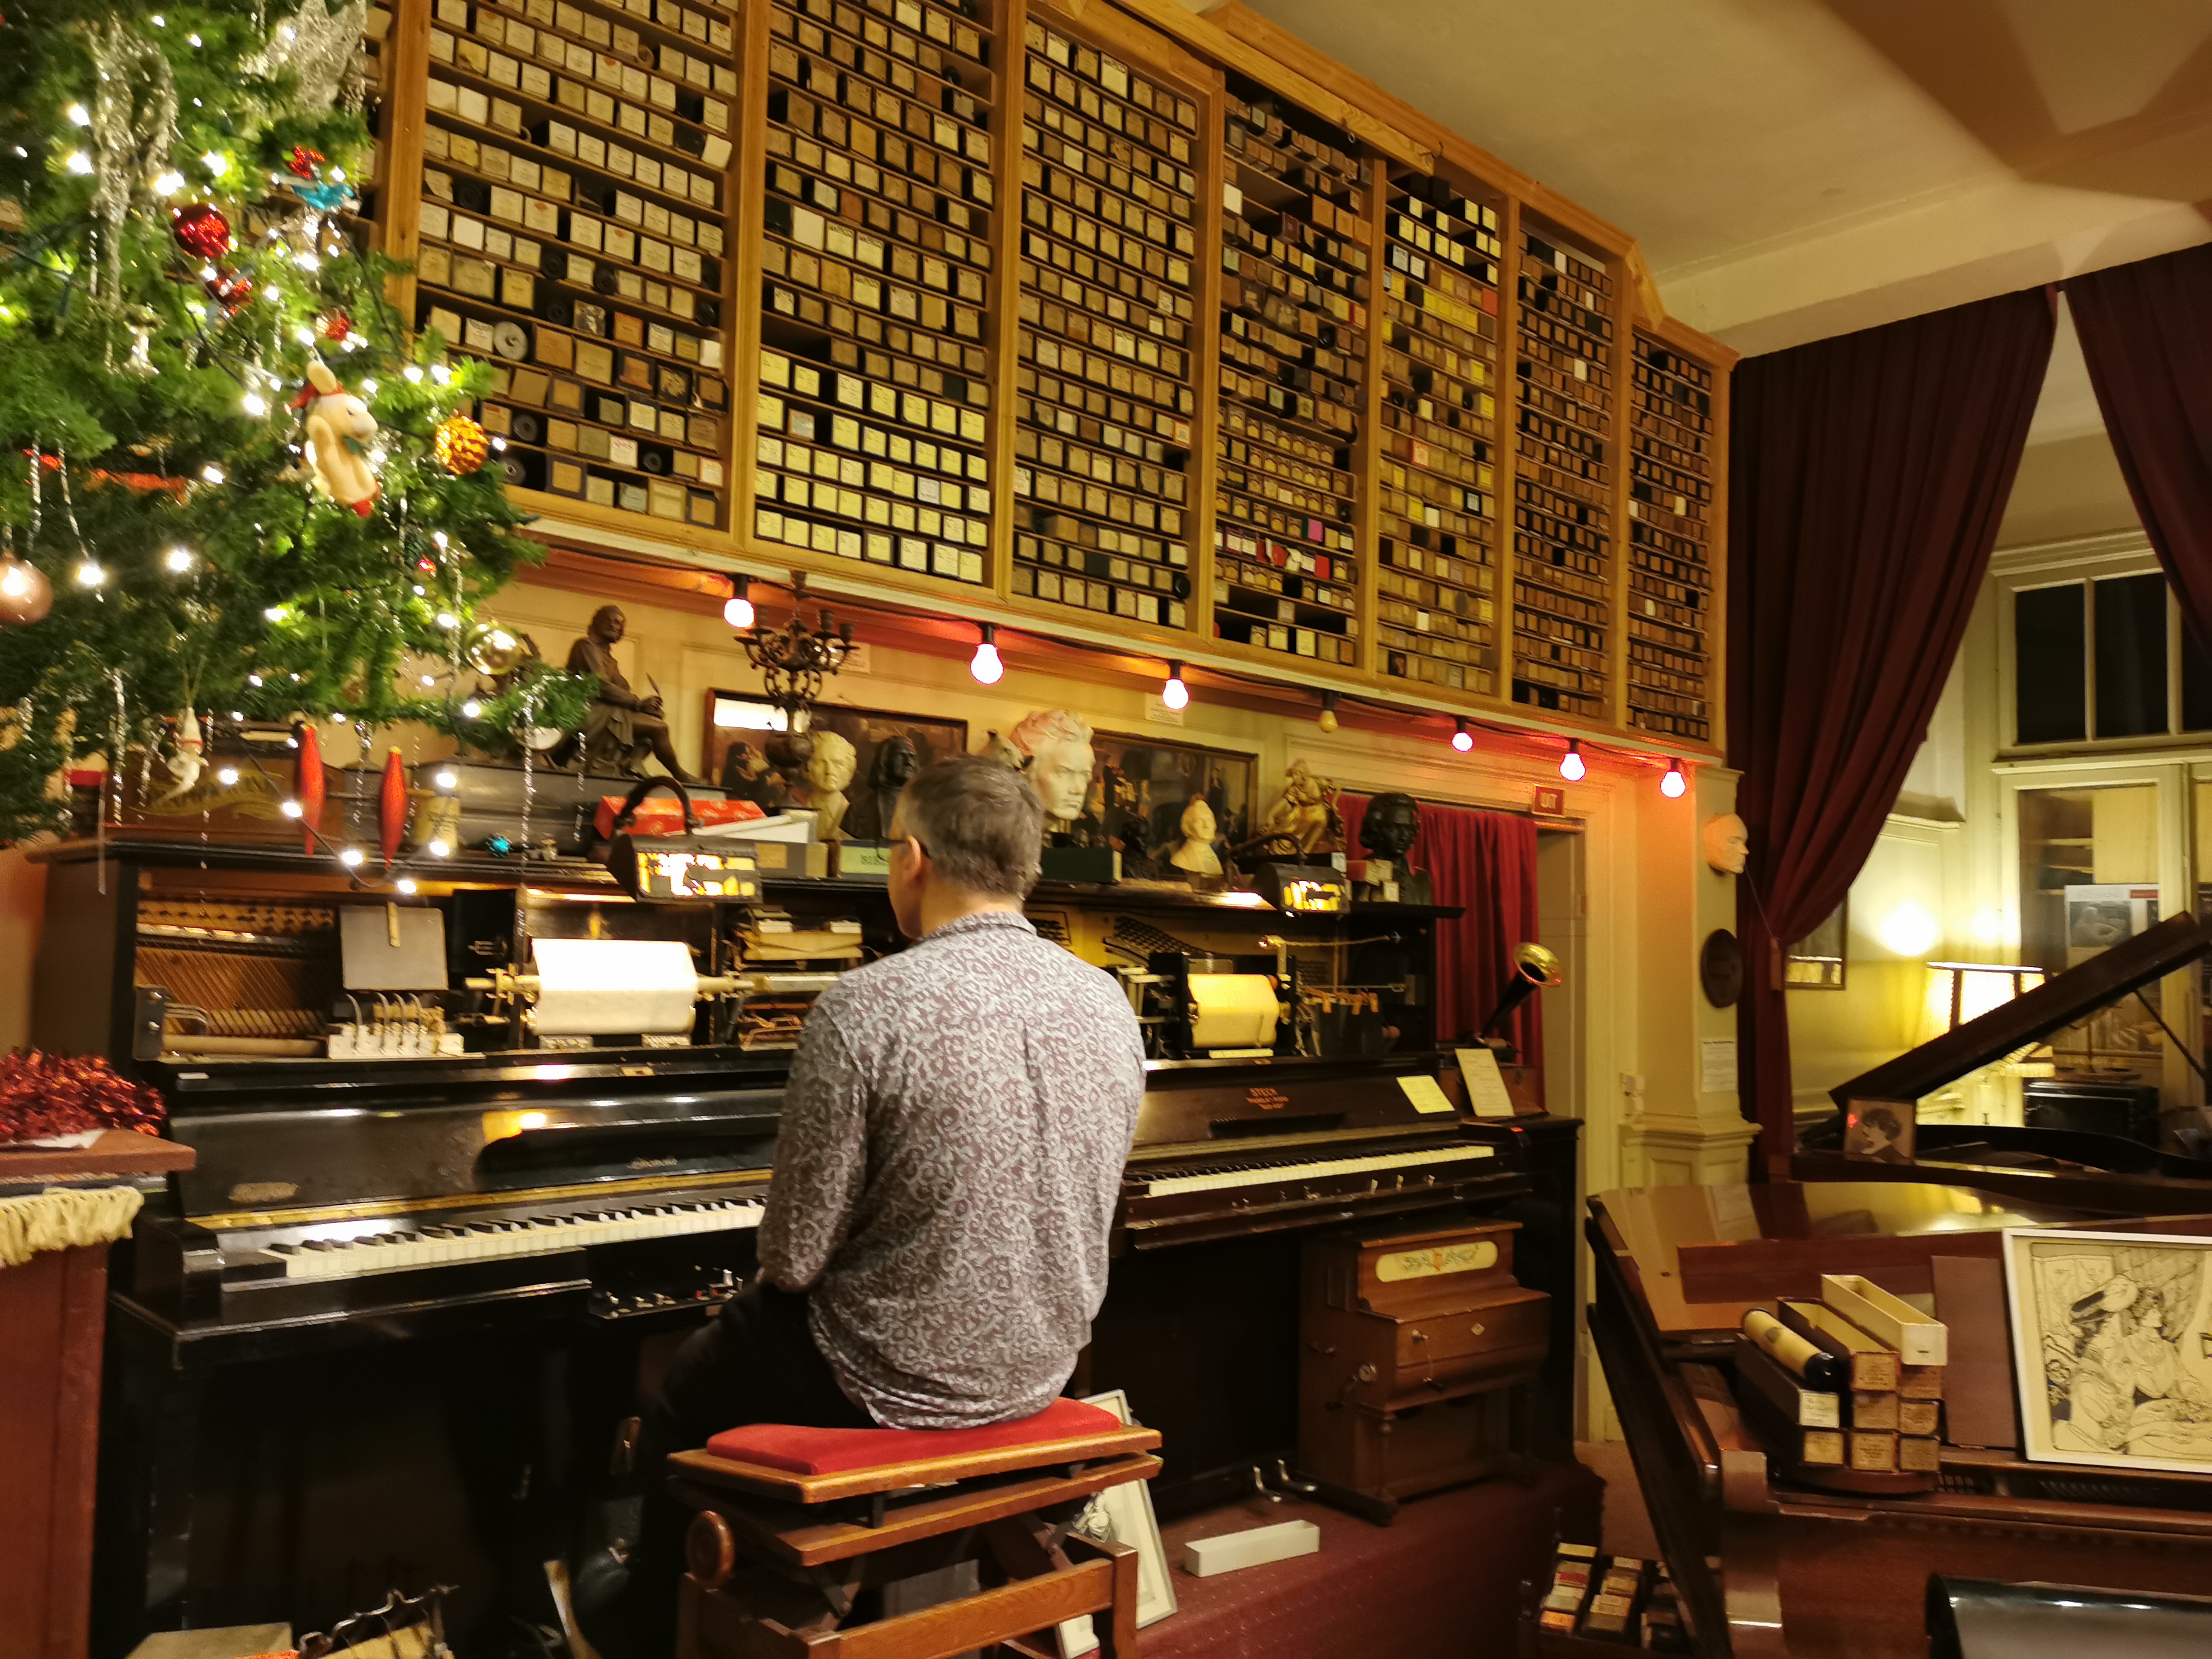 Pianola Museum in the Jordaan